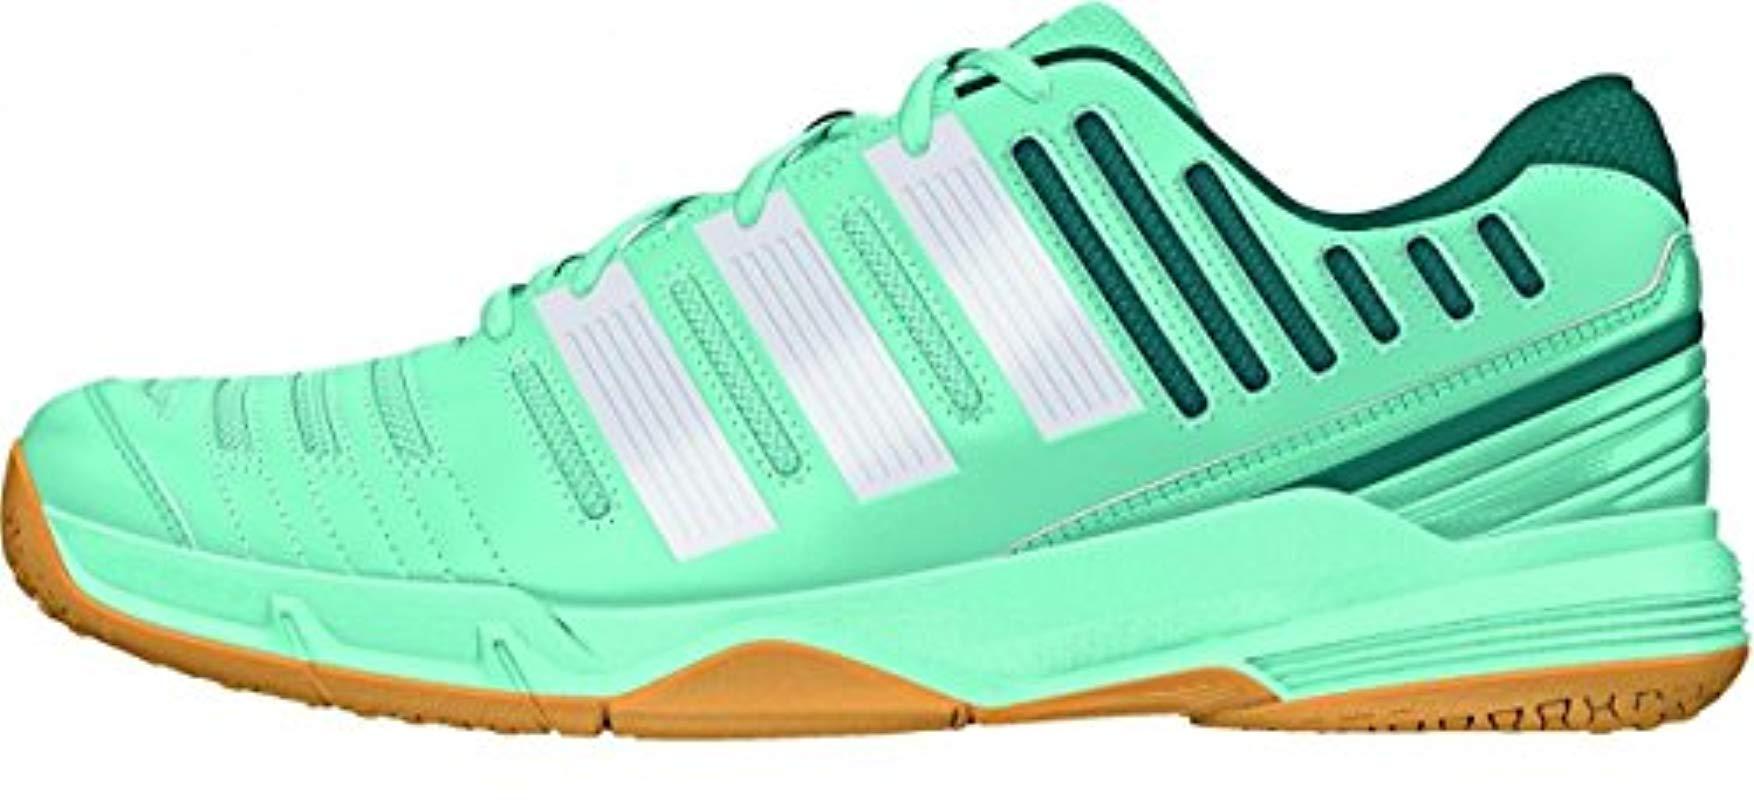 Chaussures Handball Essence 11 W Vert de color Azul | Lyst